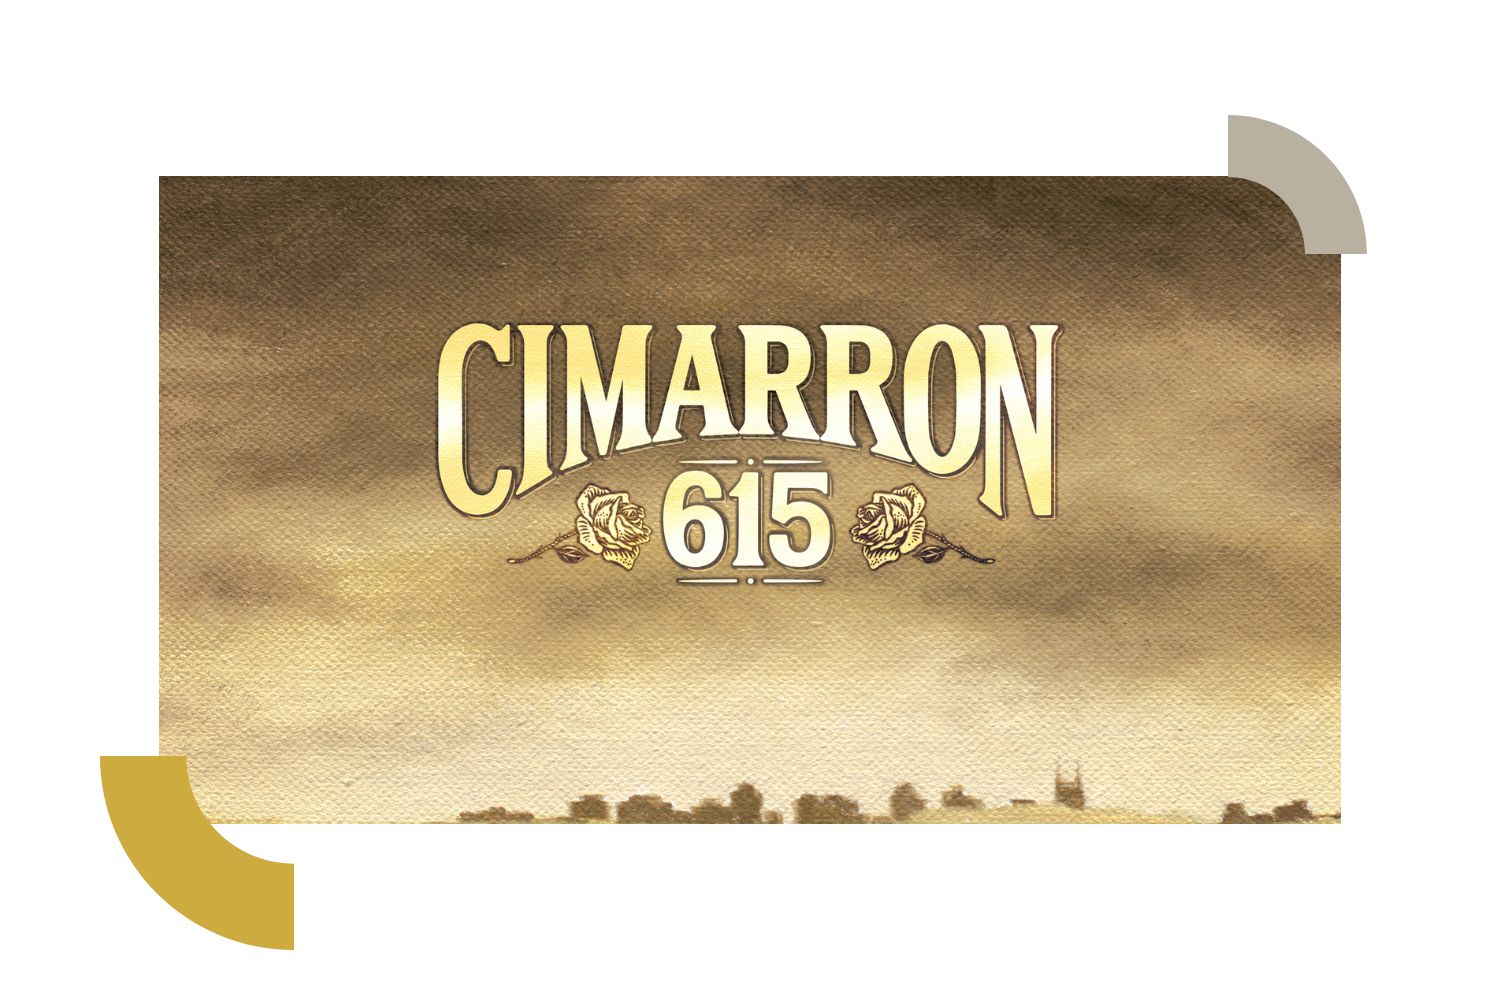 Cimarron 615 Releases New Album, 'Brand New Distance'